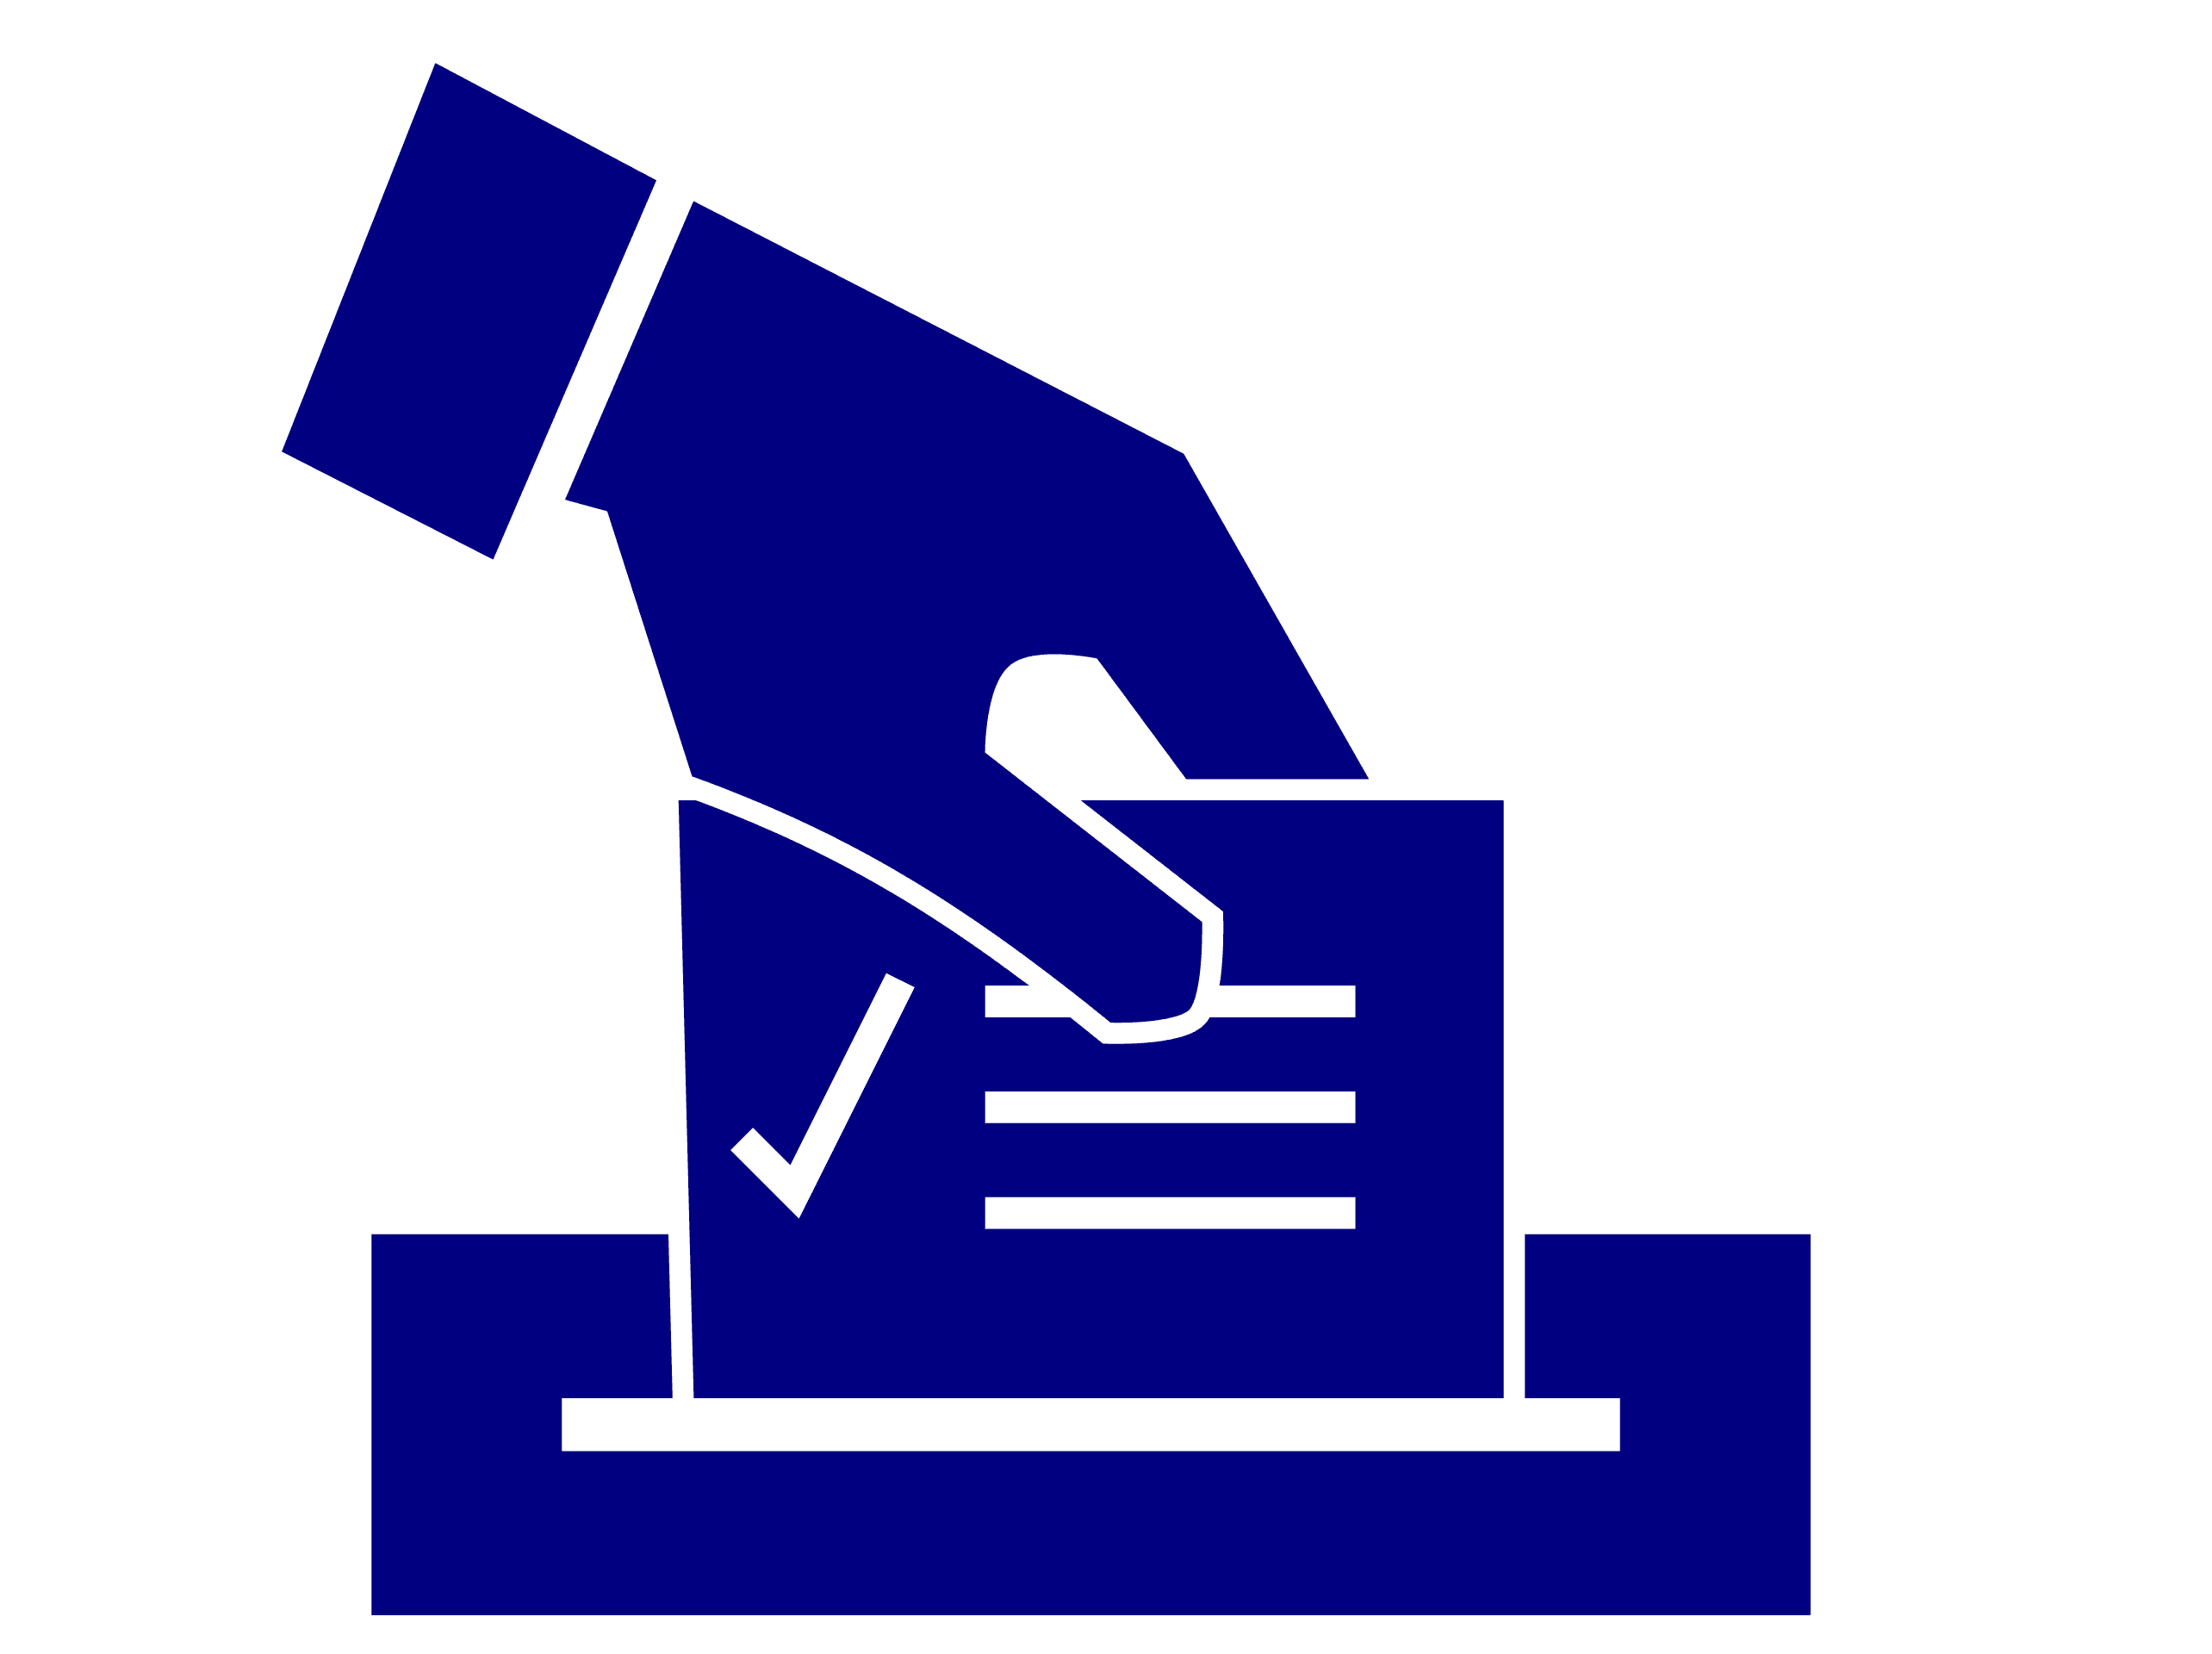 Les applications pour connaître les résultats de l’élection présidentielle